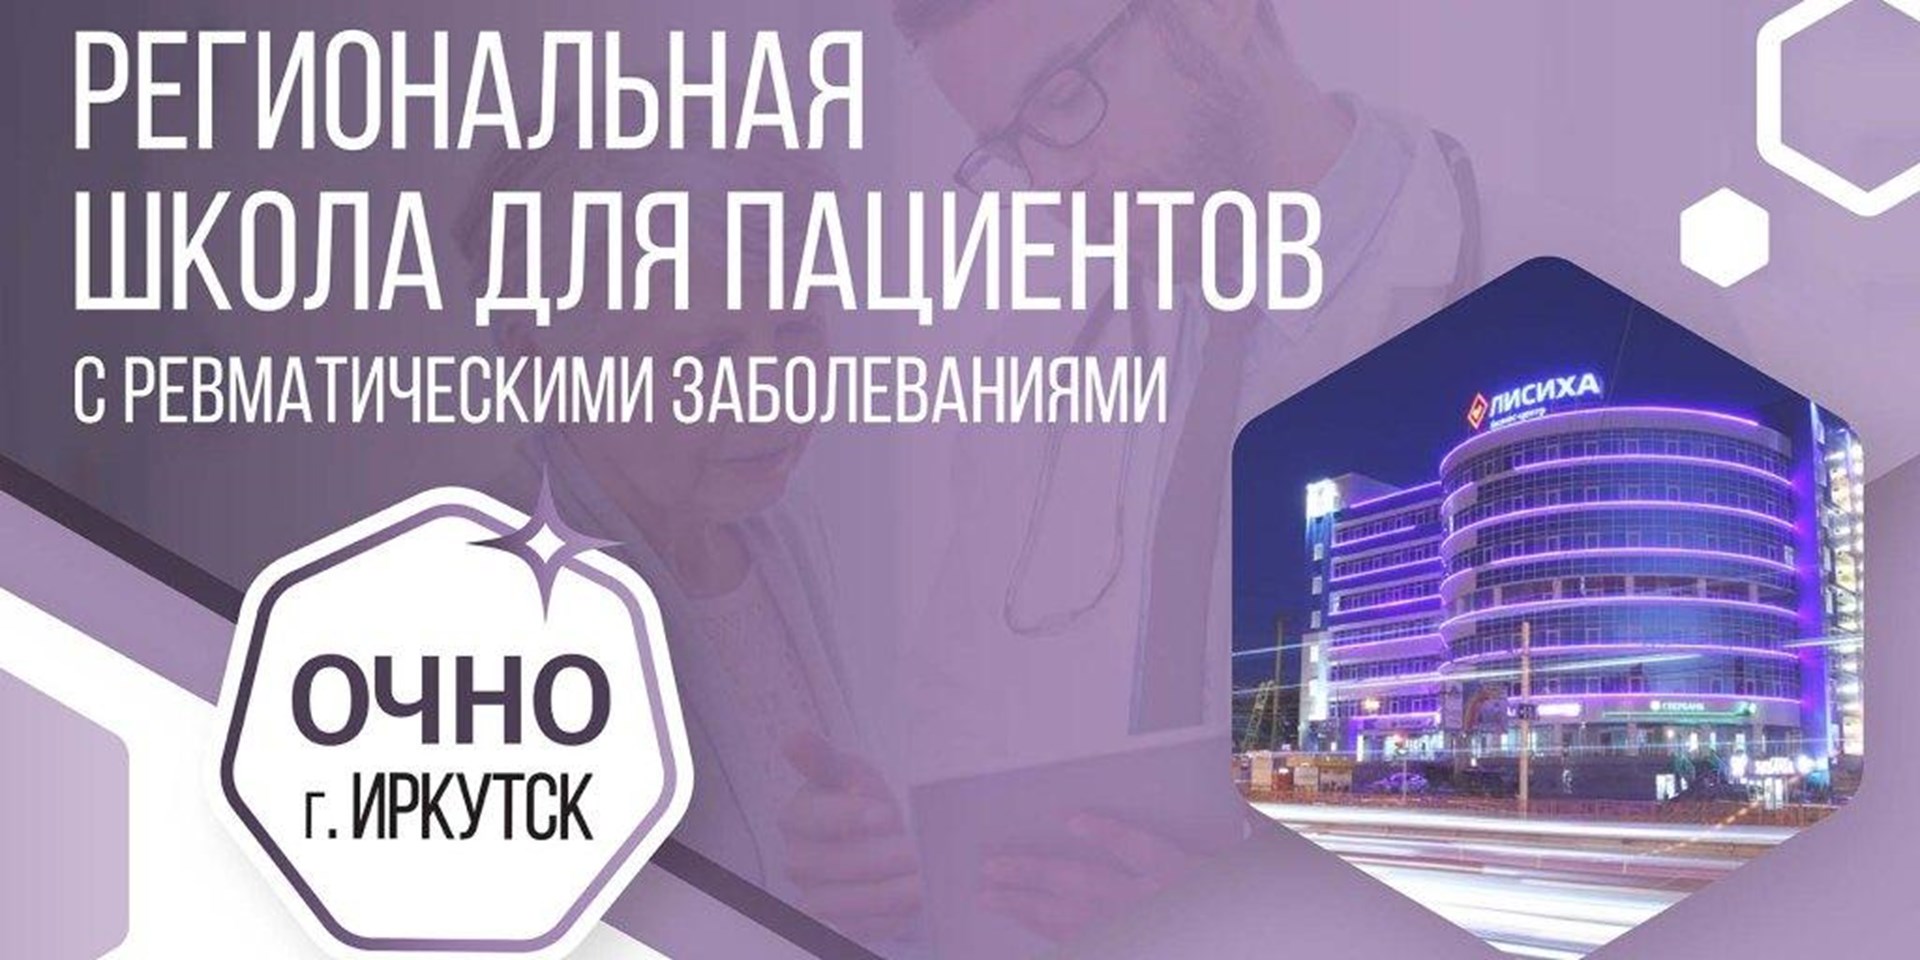 3 марта 2023 года в Иркутске пройдет школа для пациентов с ревматическими заболеваниями